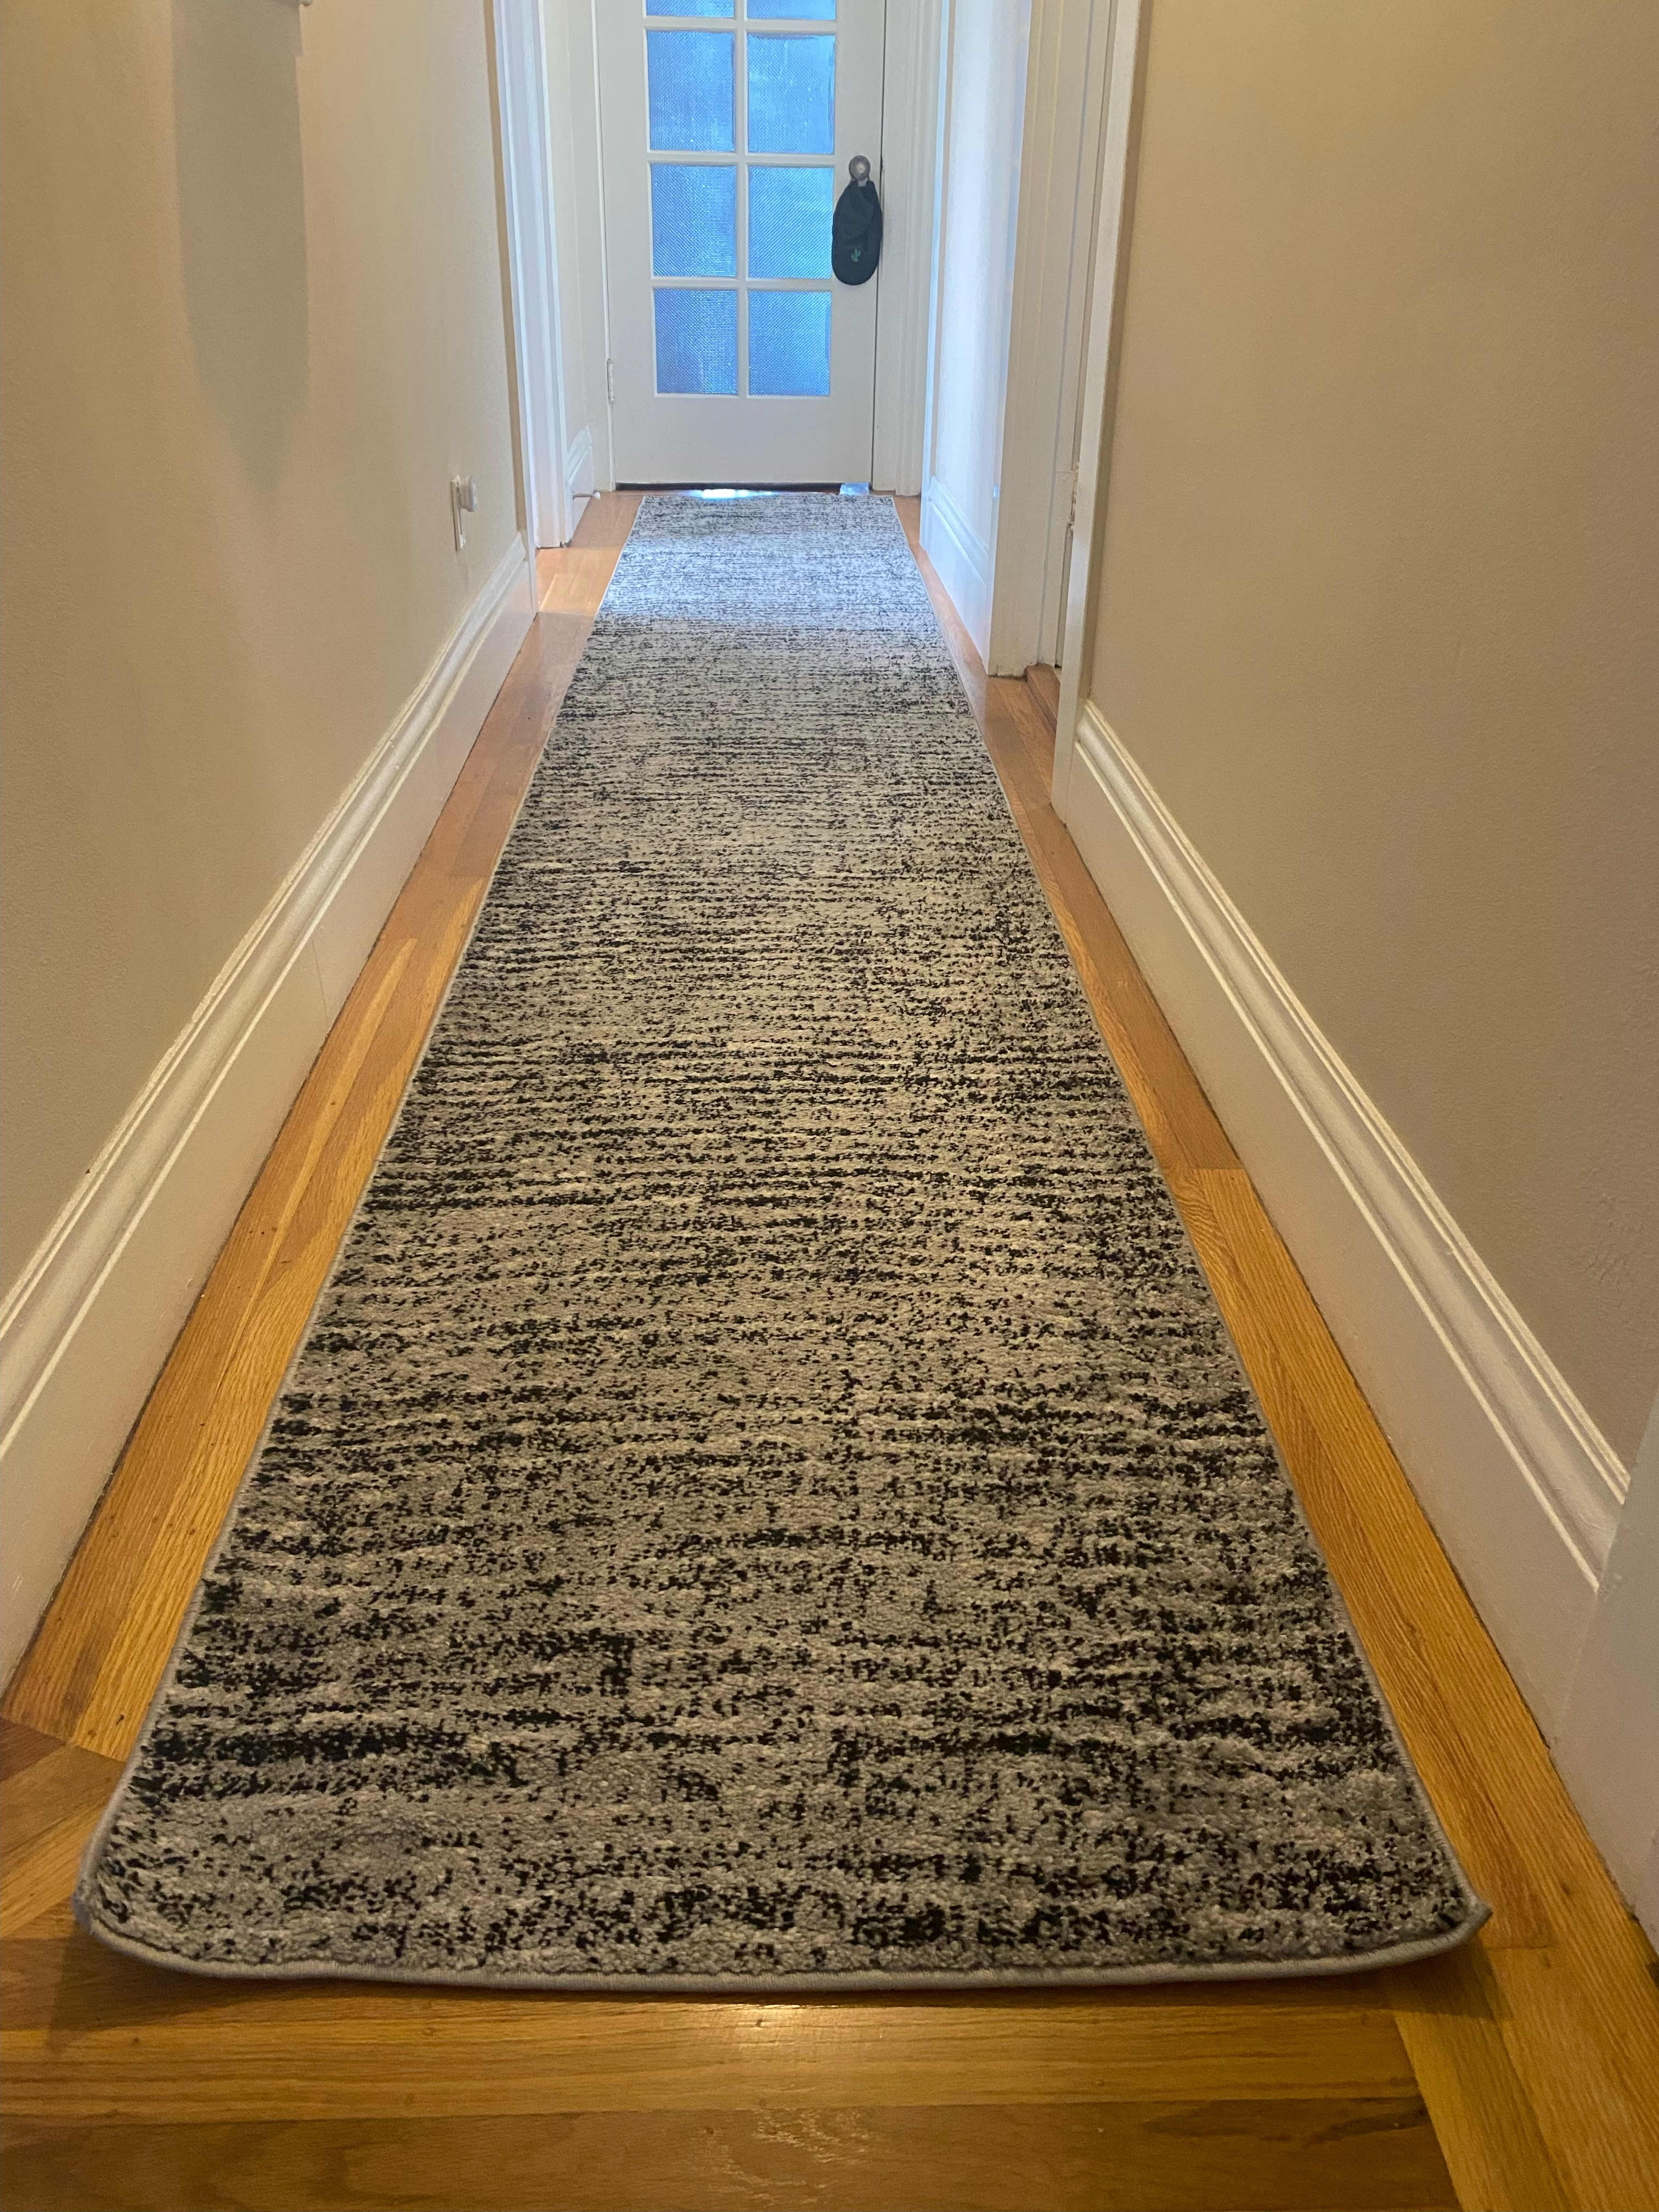 https://cdn.apartmenttherapy.info/image/upload/v1648589219/at/living/2022-03/Carpet%20Tape/IMG_2885.jpg